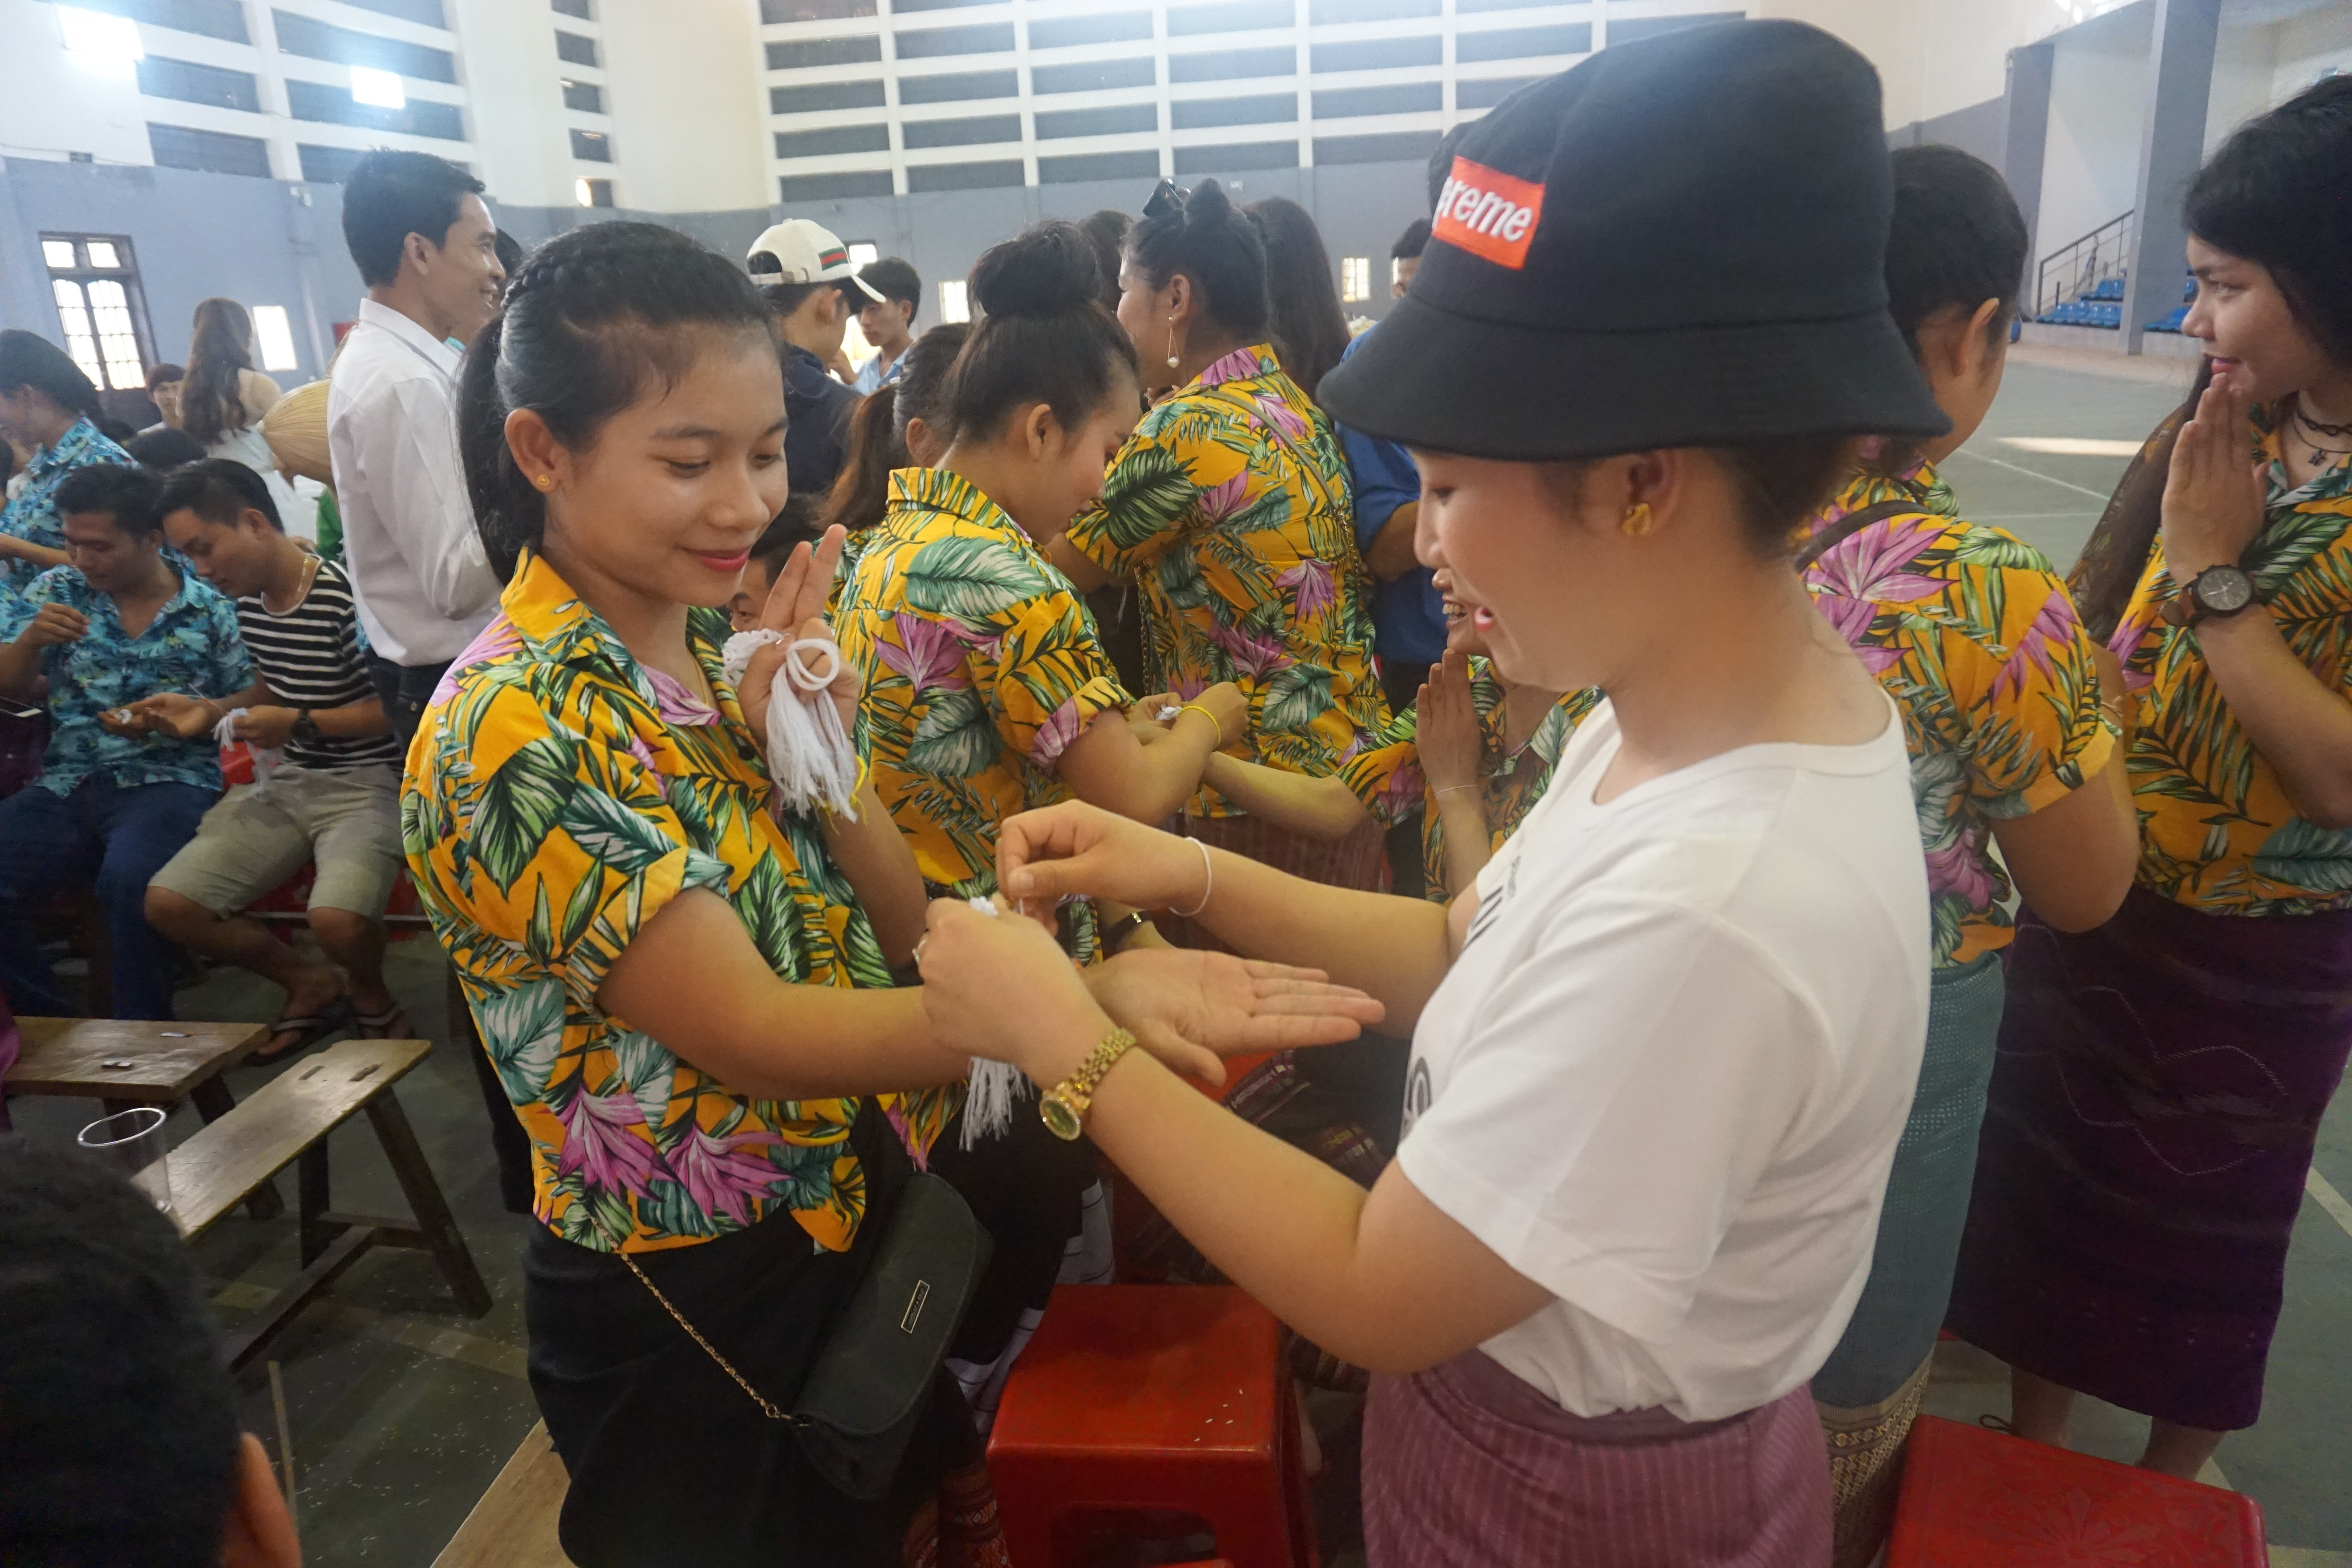 Tại đây, các đại biểu và lưu học sinh Lào cùng nhau làm lễ cầu may, té nước, buộc chỉ tay, và chúc nhau một năm mới sức khỏe, gặp nhiều may mắn. Ảnh: Chu Quang Huy